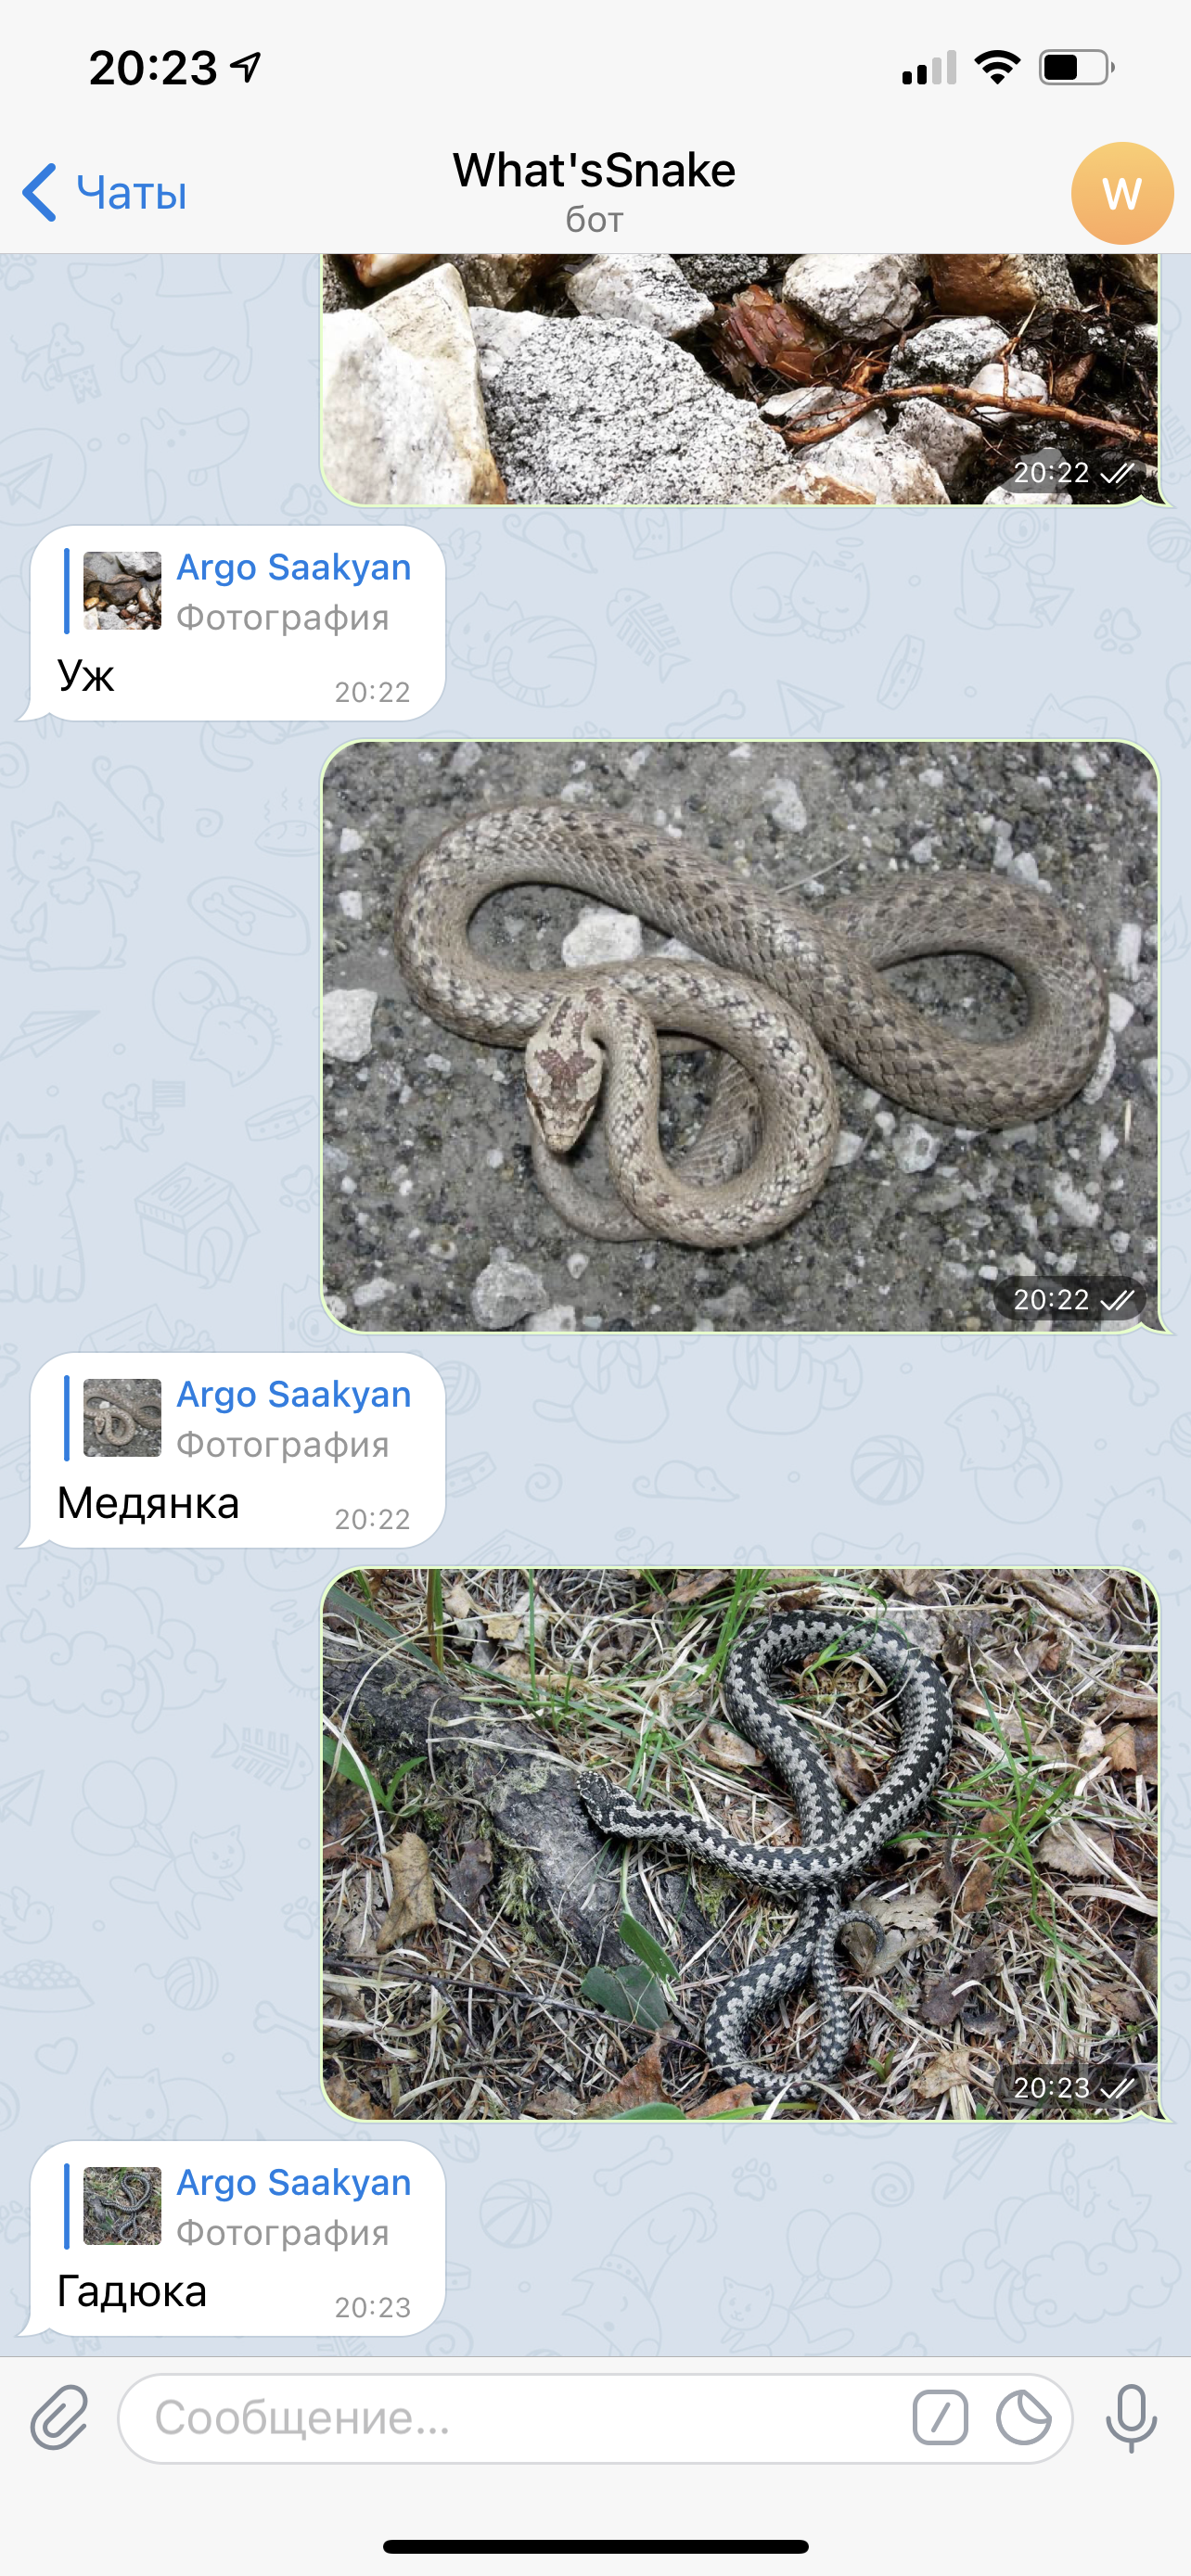 Скриншоты из telegram-бота по распознаванию вида змей, примеры 